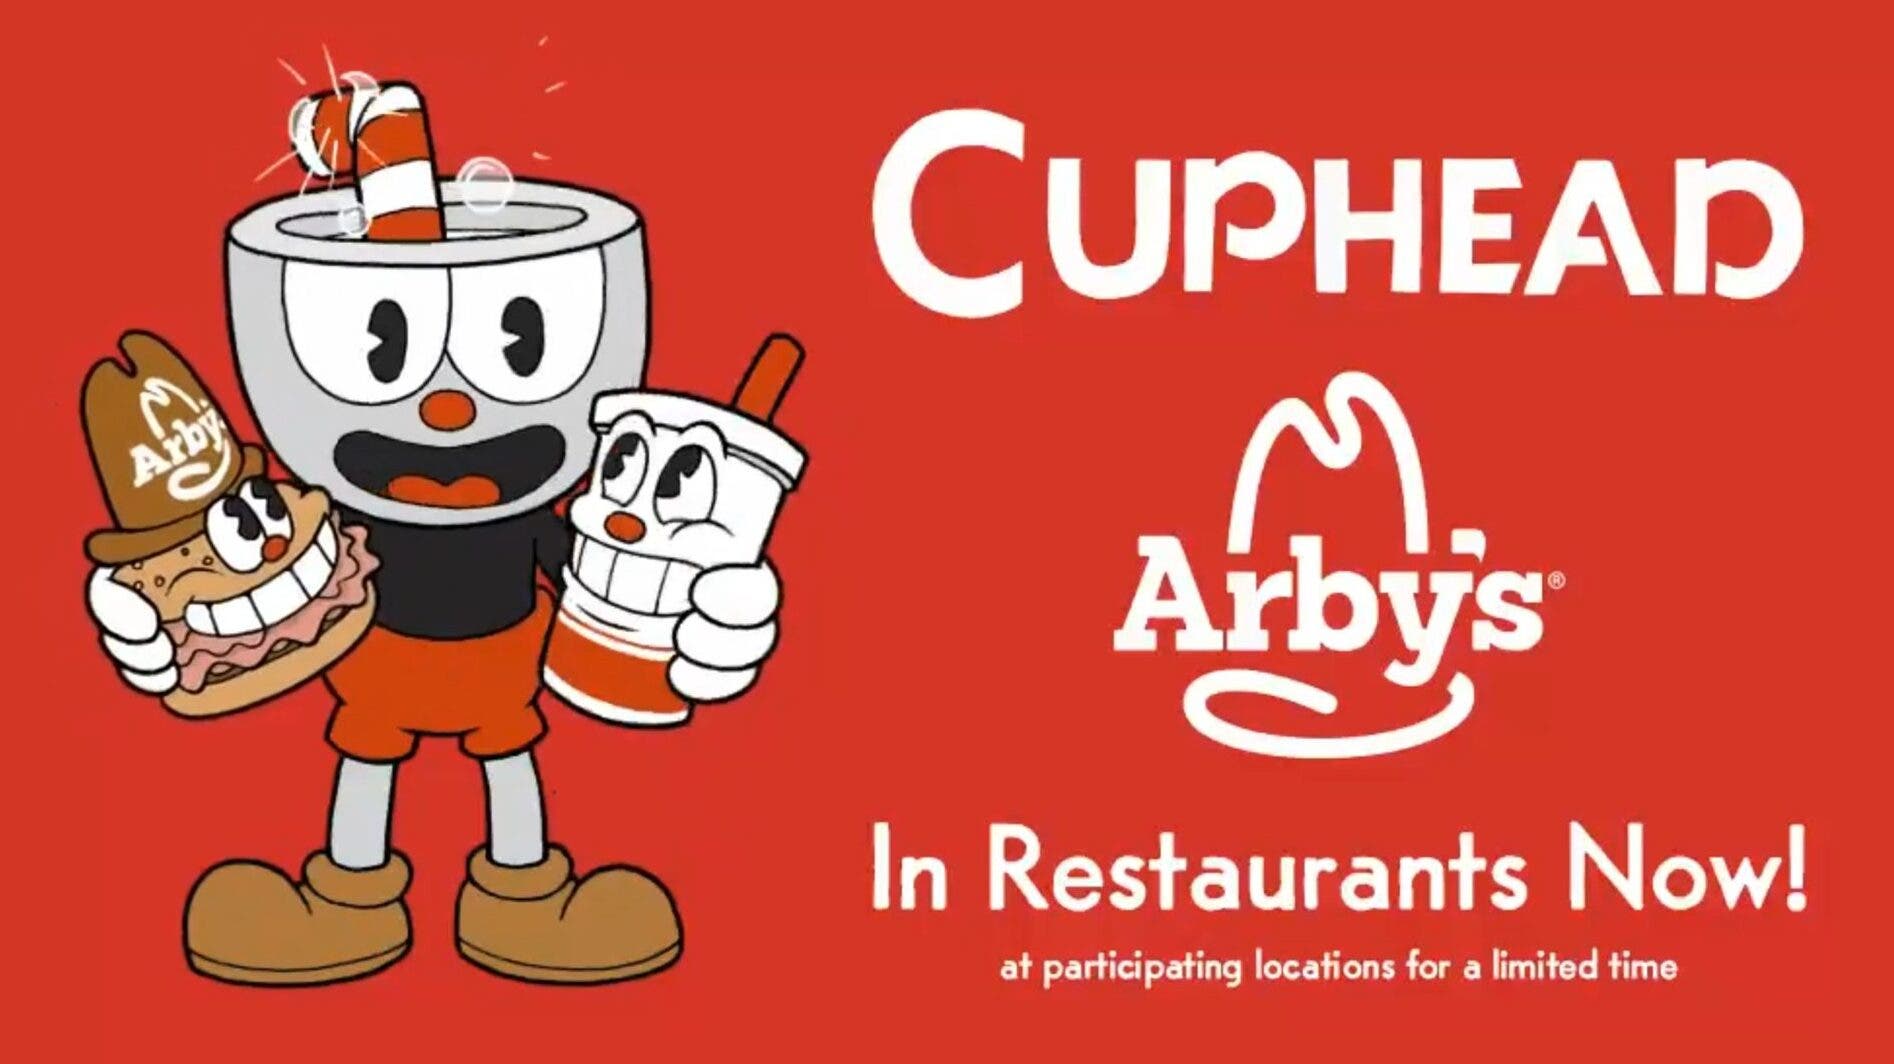 Cuphead continúa expandiéndose: acaba de confirmar colaboración con Arby’s